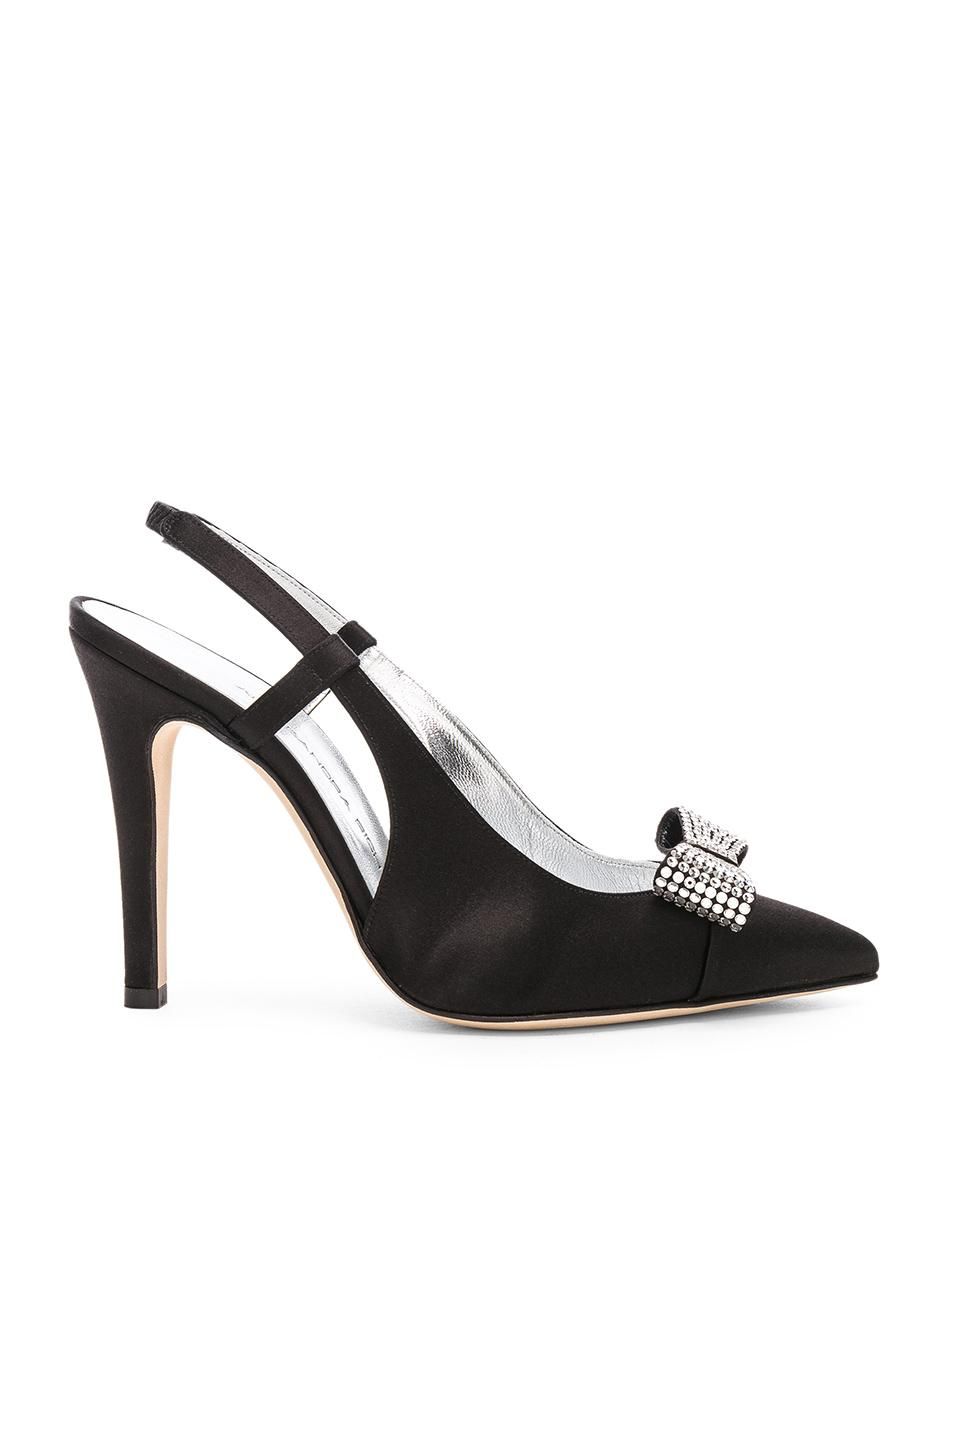 Shop Black Crystal-Embellished Heels | Who What Wear